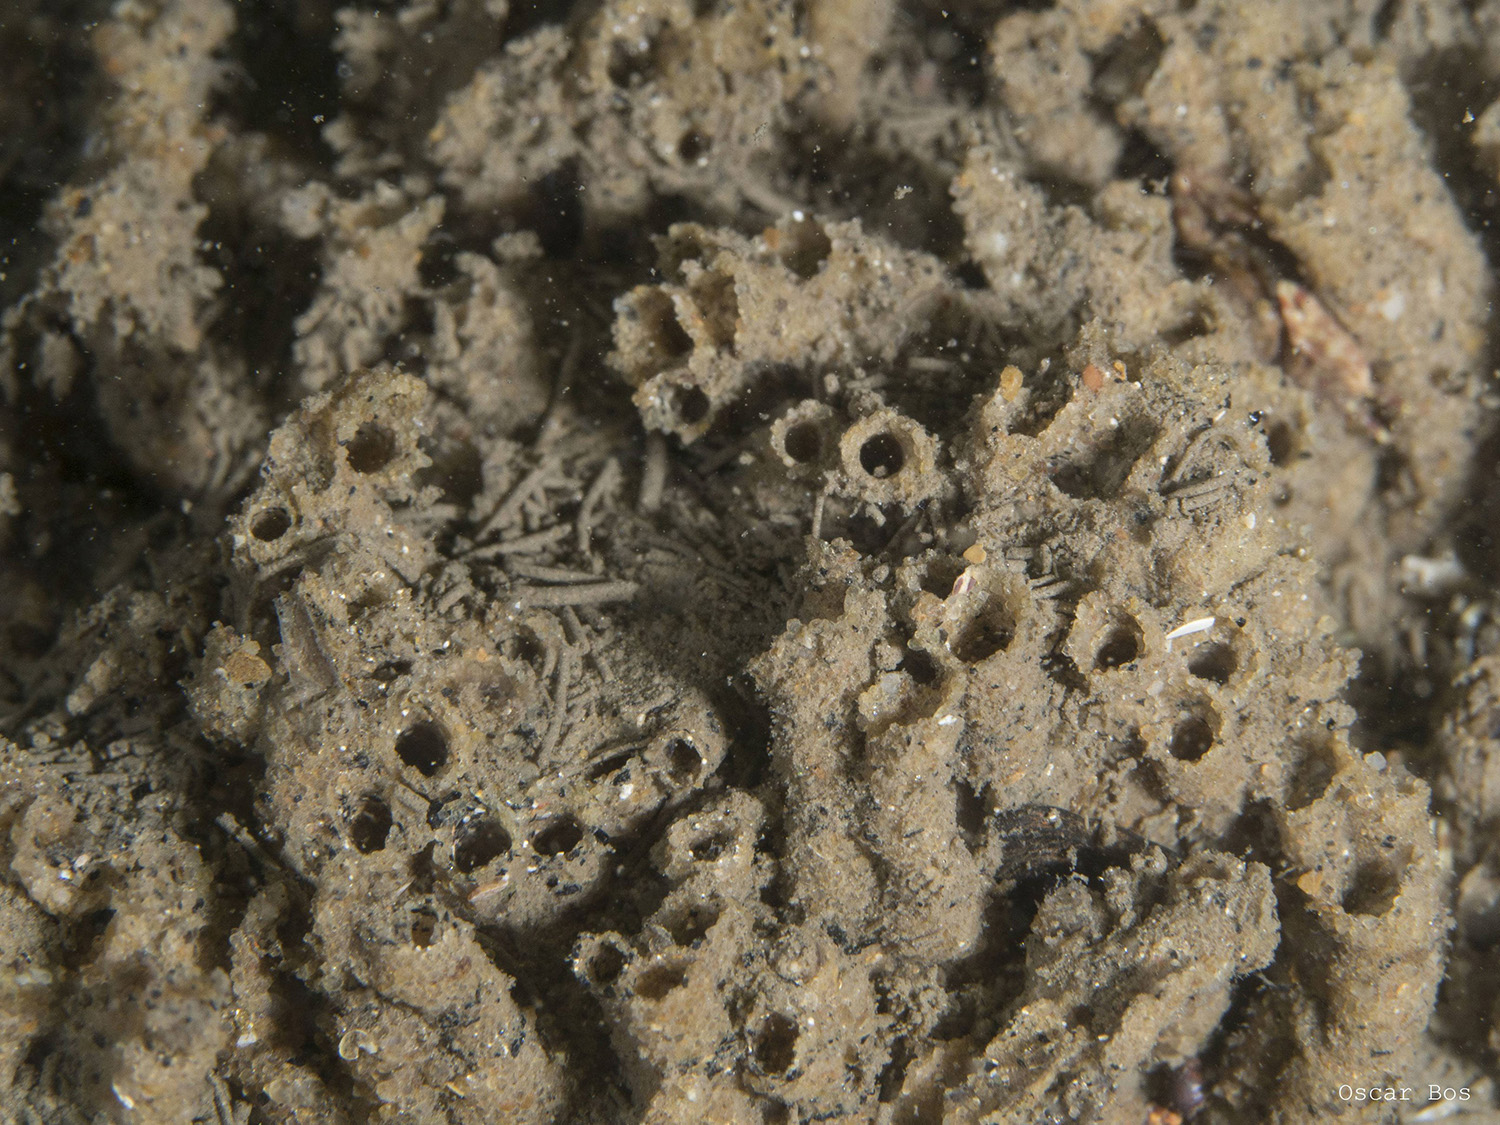 Sabellaria-wormen (zandkokerwormen) dragen bij aan riffen van zandsteen, natuurlijke 3D-structuren in de Noordzee. Beeld: Oscar Bos.